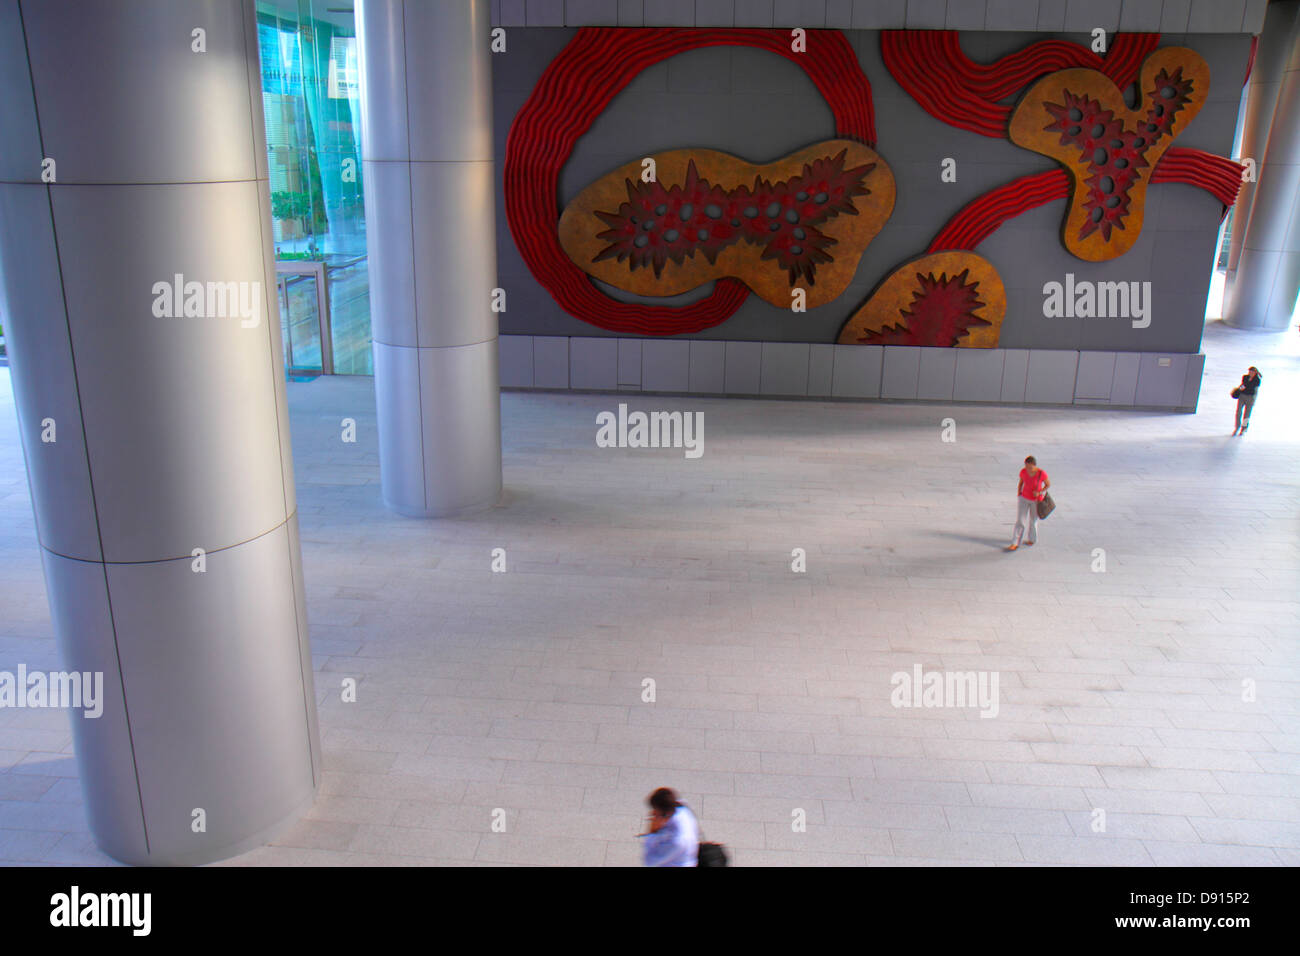 Singapore 50 Collyer Quay, edificio per uffici, plaza, pilastri, grande murale, arte, Sing130201217 Foto Stock